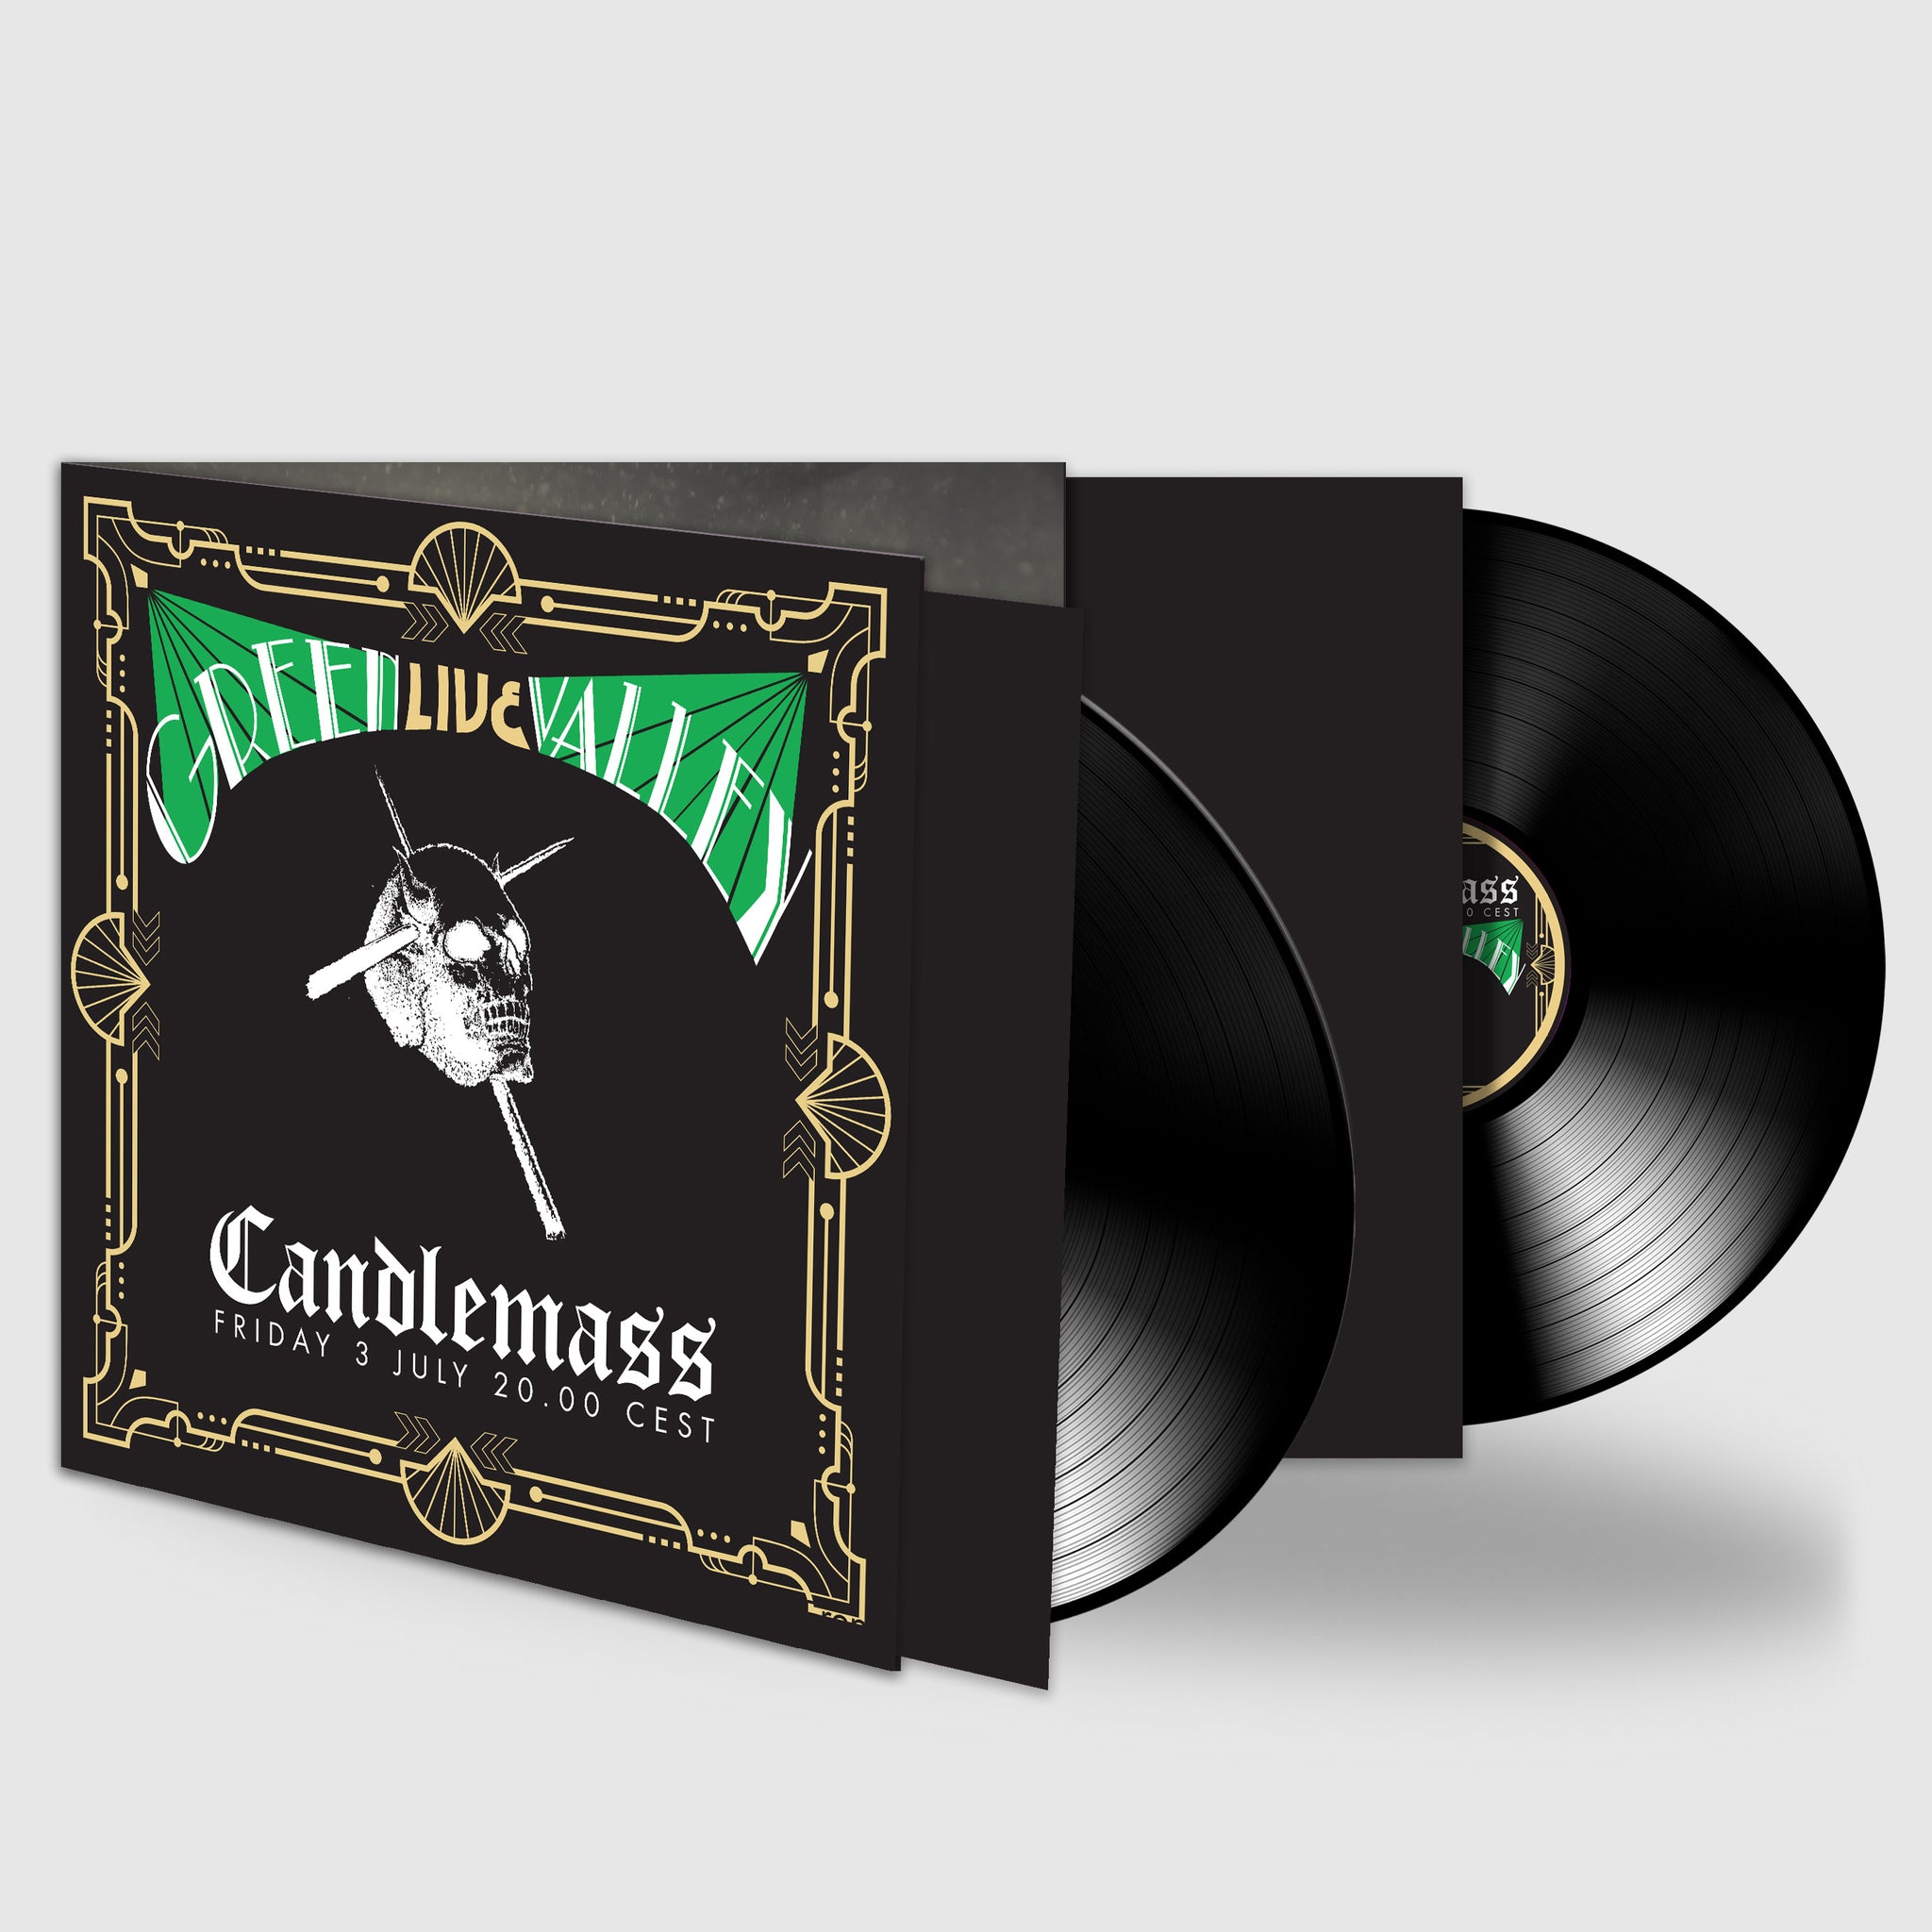 Candlemass "Green Valley Live" 2x12" Vinyl